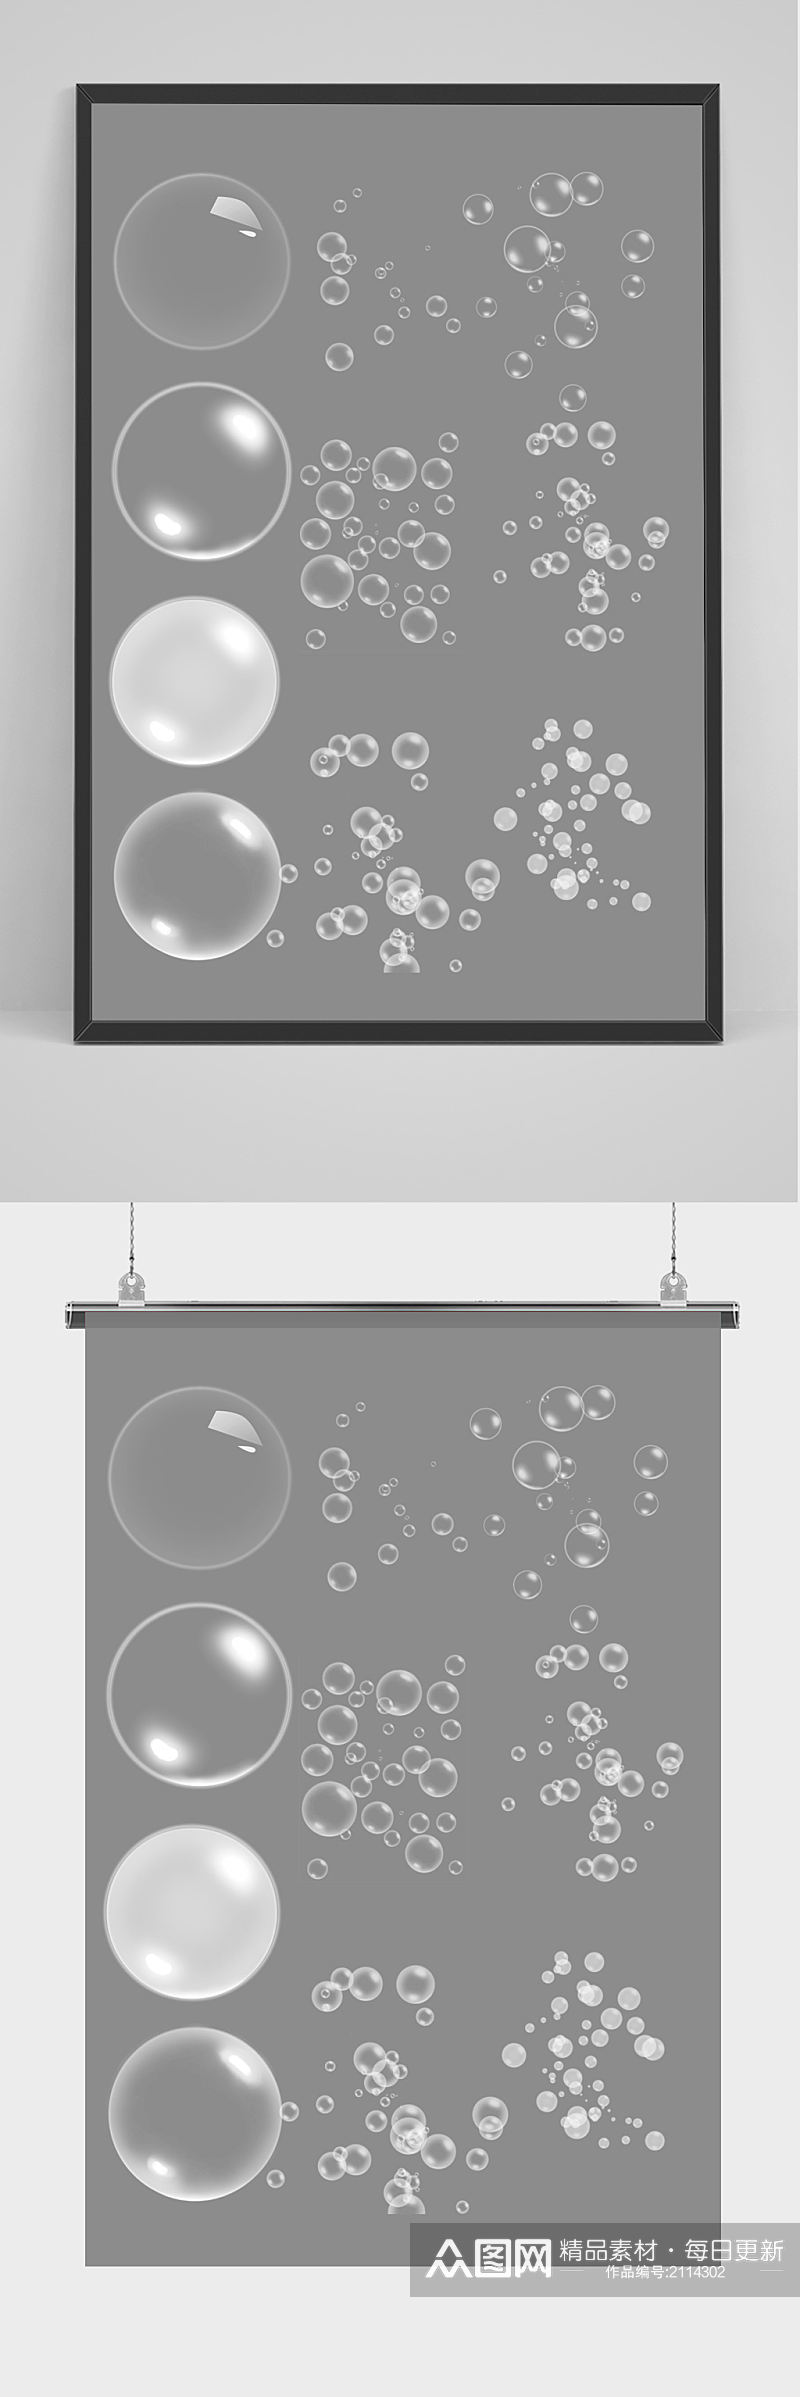 原创漂浮素材水泡气泡psd素材素材